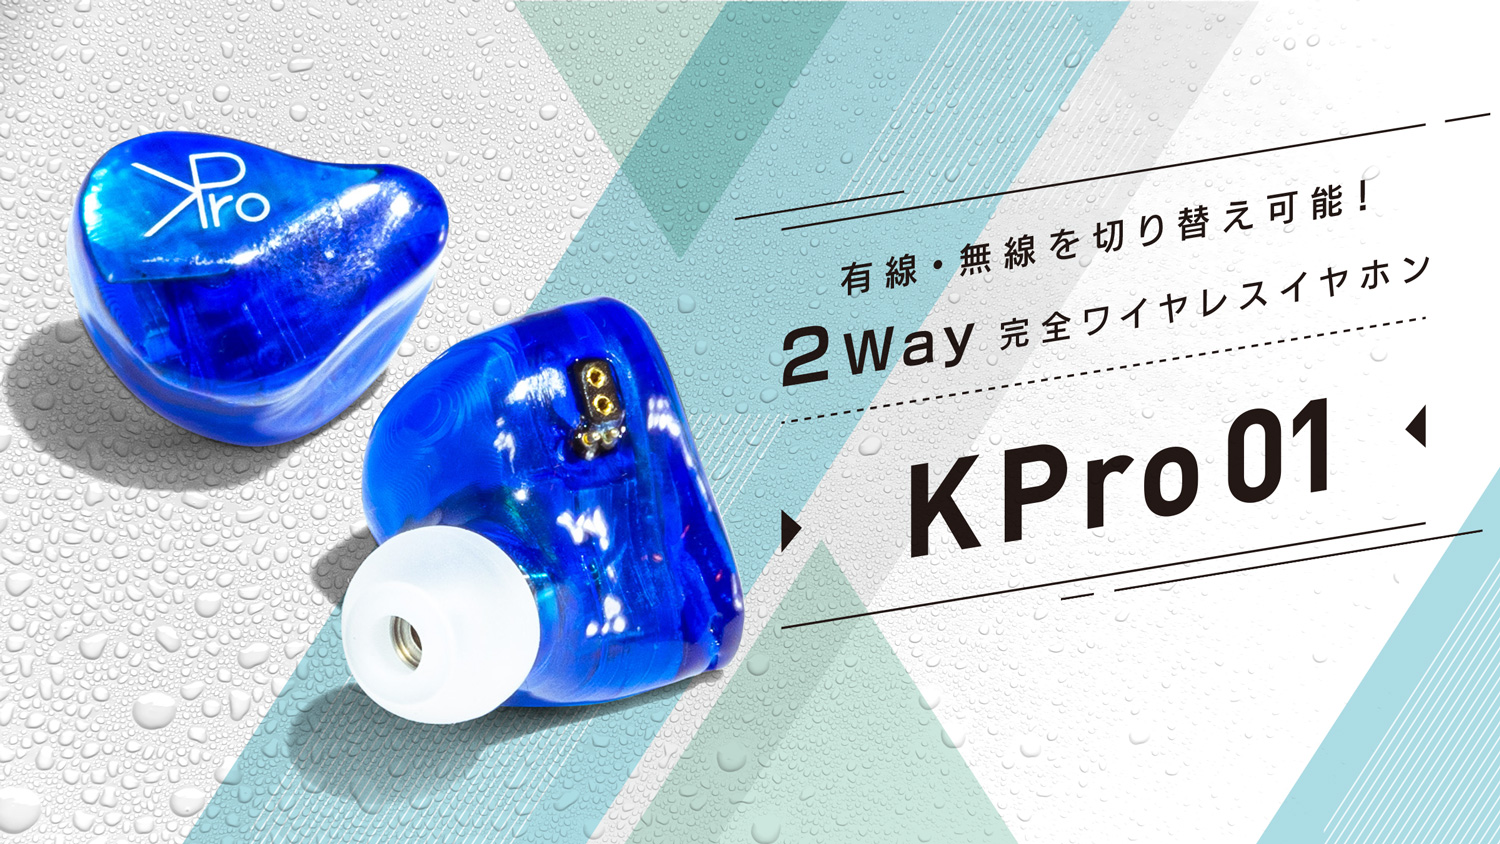 有線・無線を切り替え可能な完全ワイヤレスイヤホン、オウルテック「KPro01」の一般発売が決定！